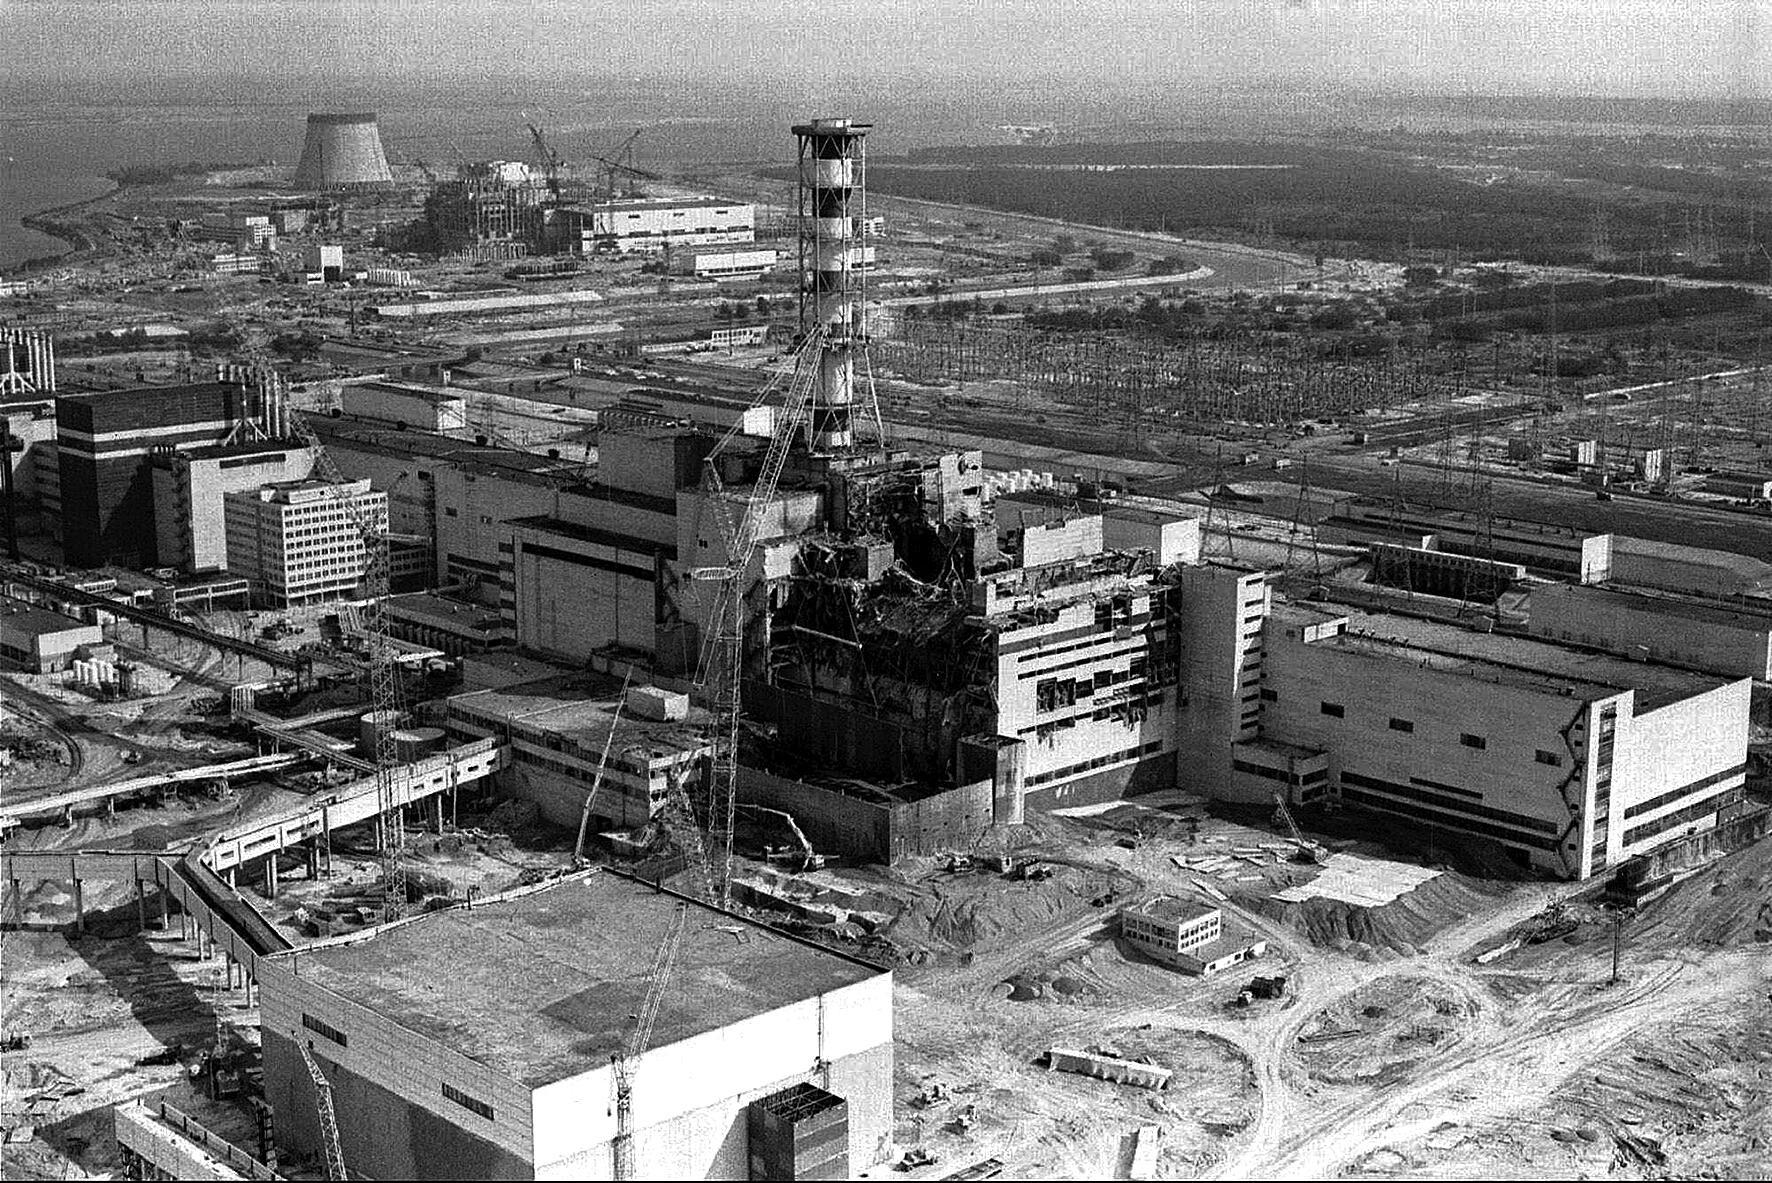 Фото ядерного взрыва в чернобыле